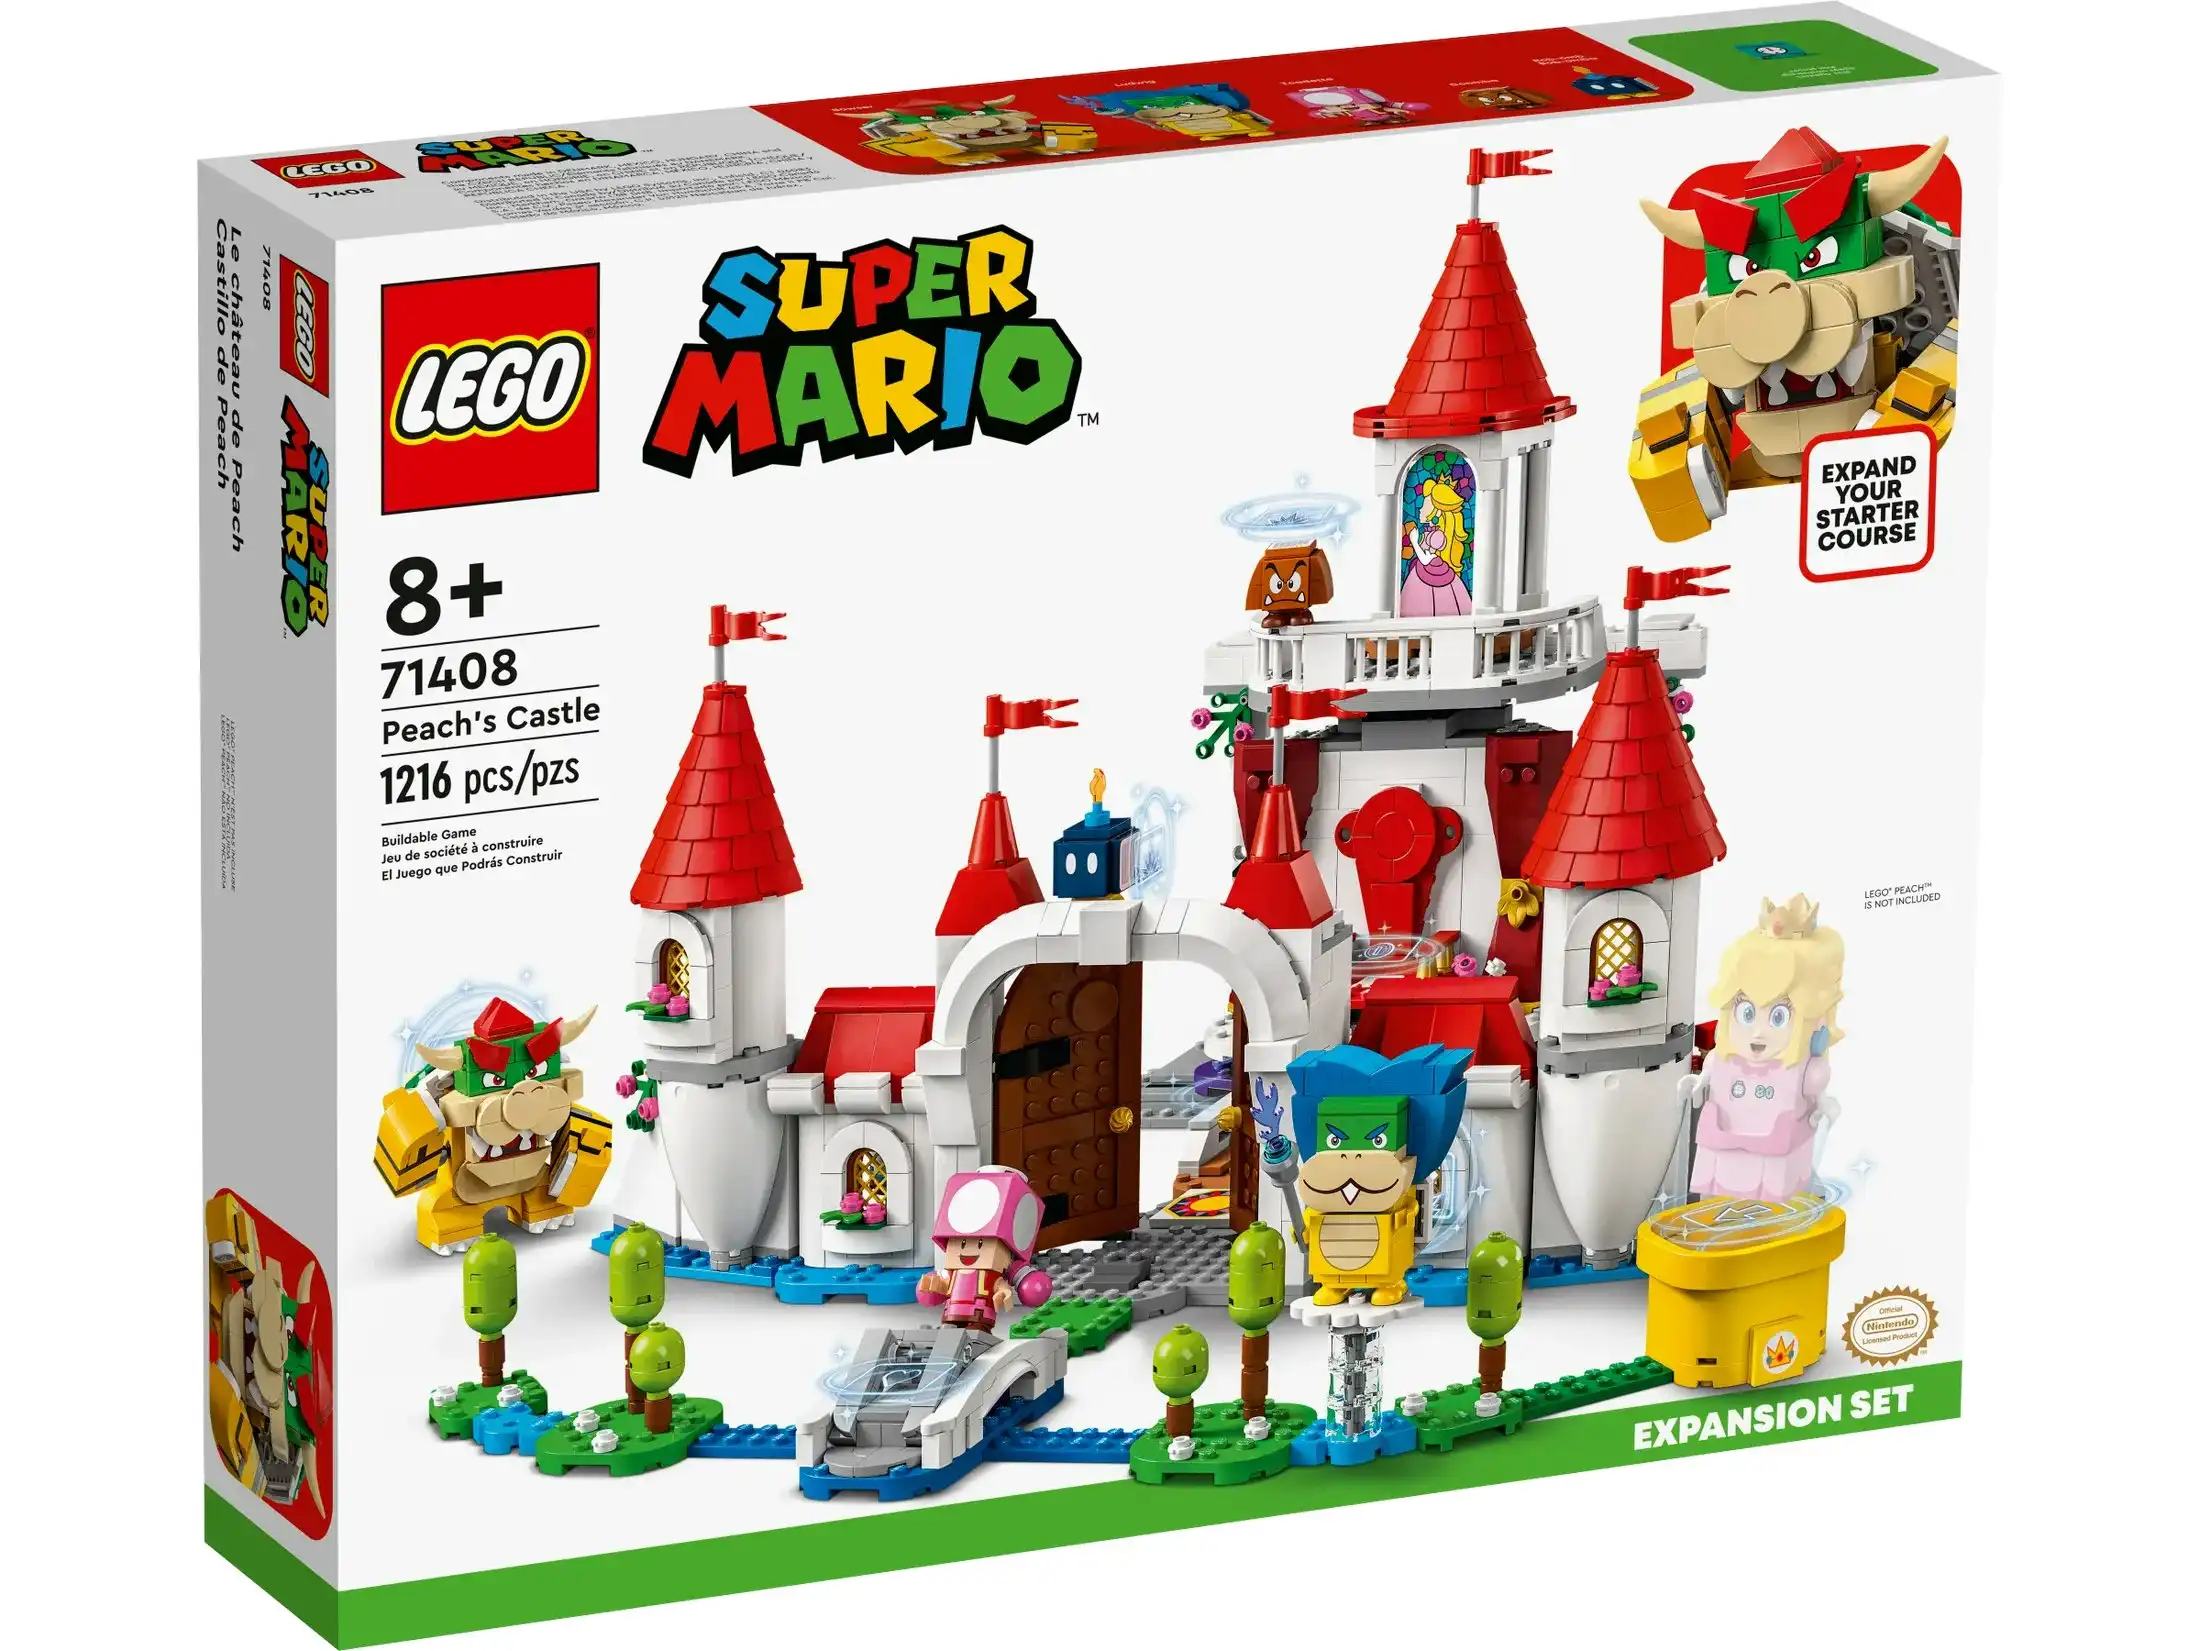 LEGO 71408 Peach’s Castle Expansion Set - Super Mario